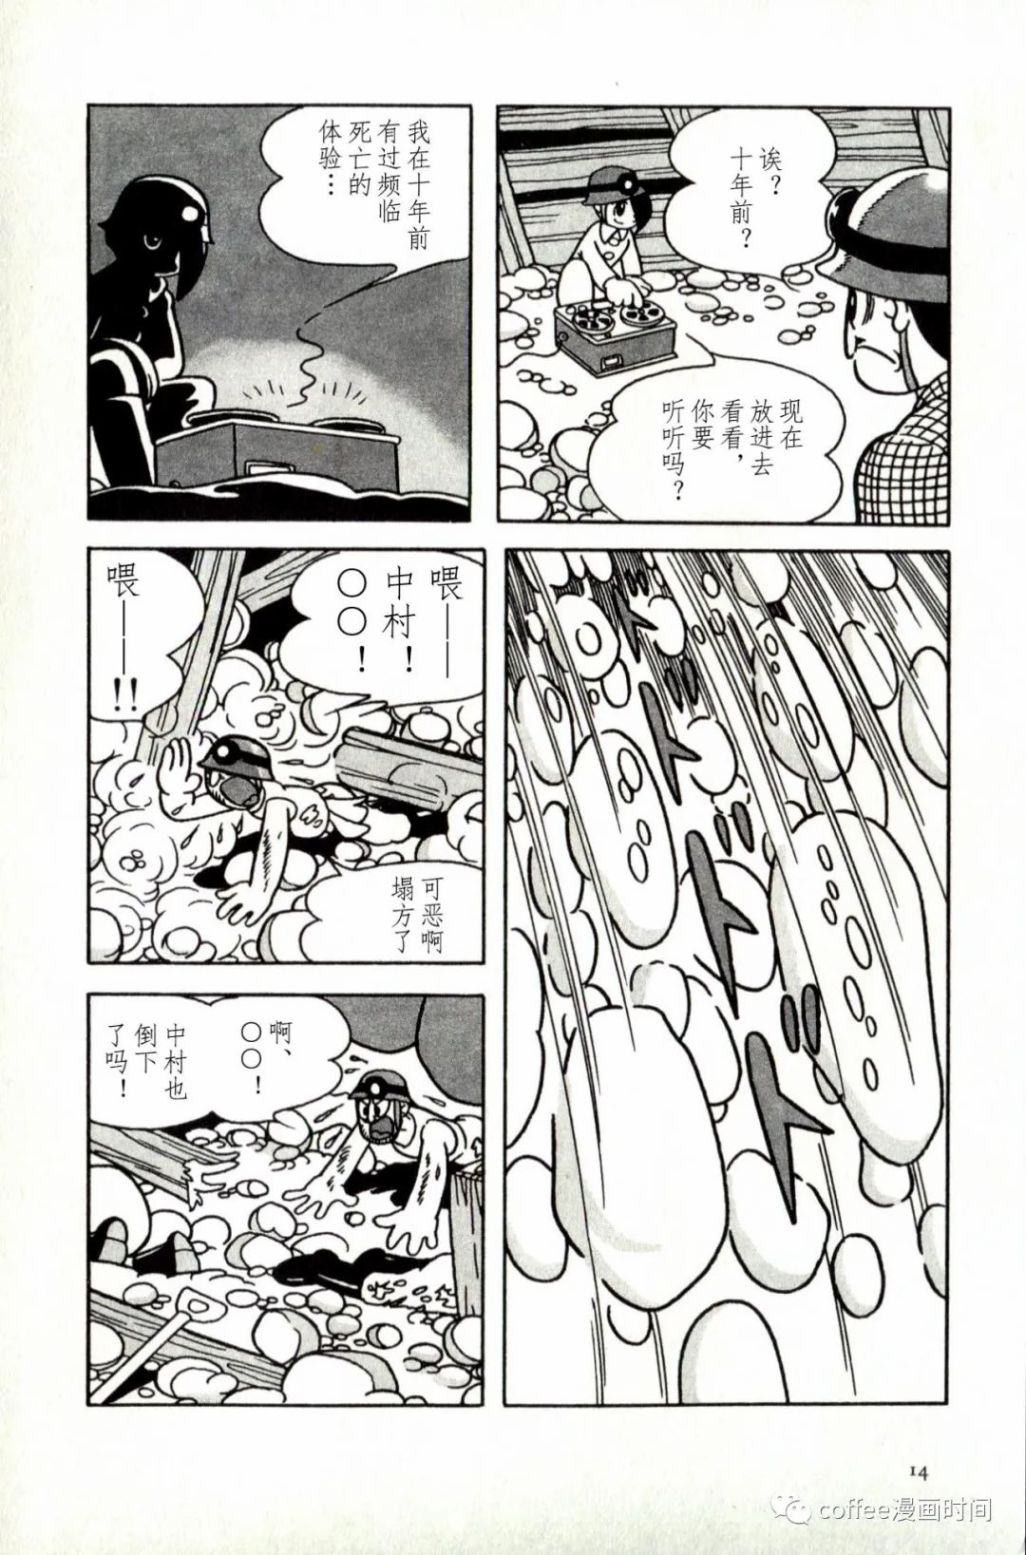 日本短篇漫畫傑作集 - 手冢治虫《落盤》 - 5